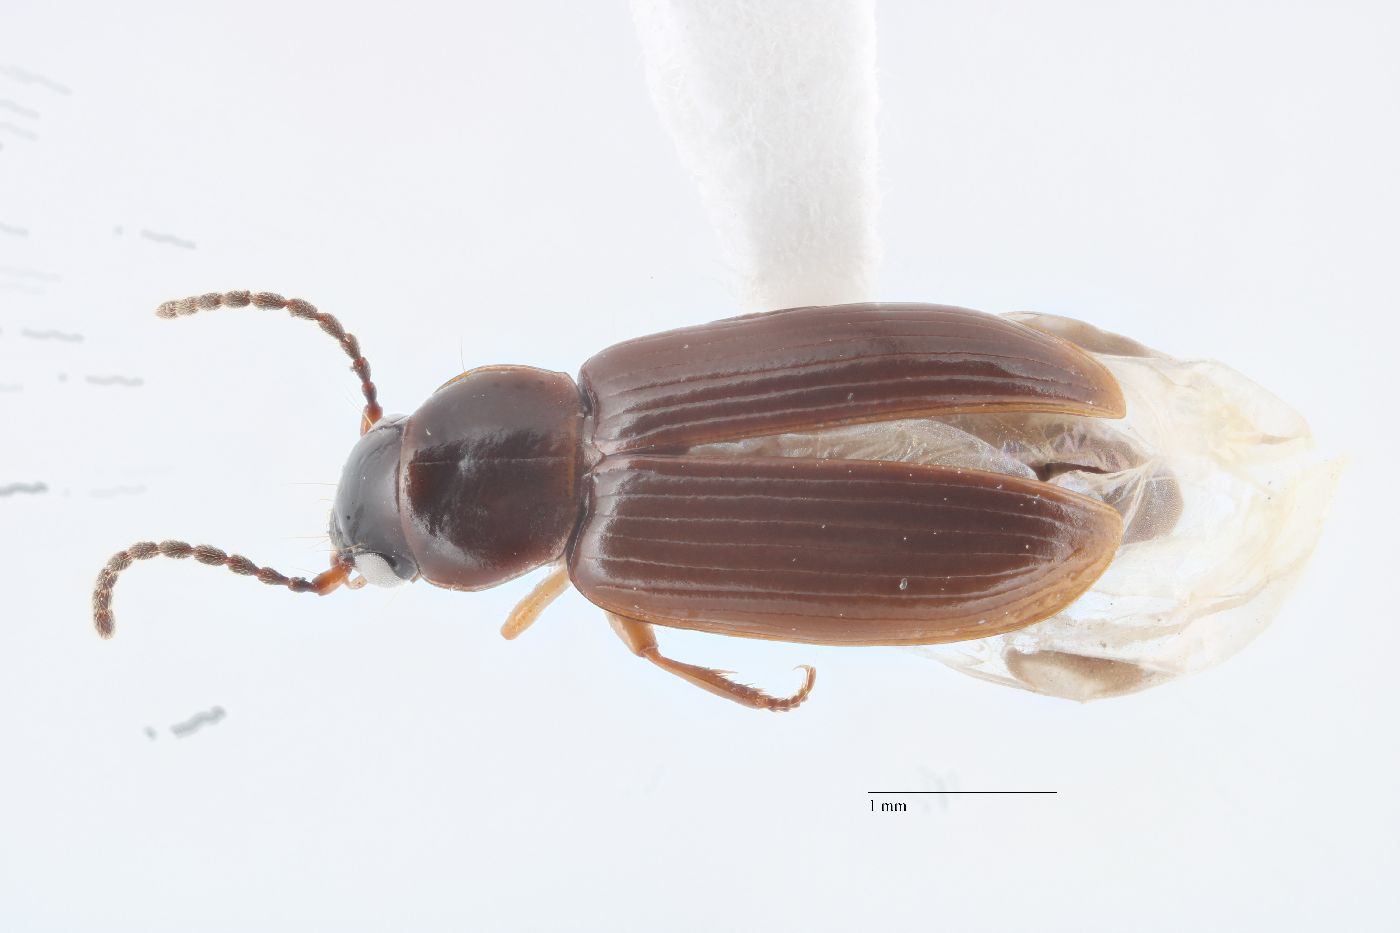 Bradycellus (Bradycellus) image